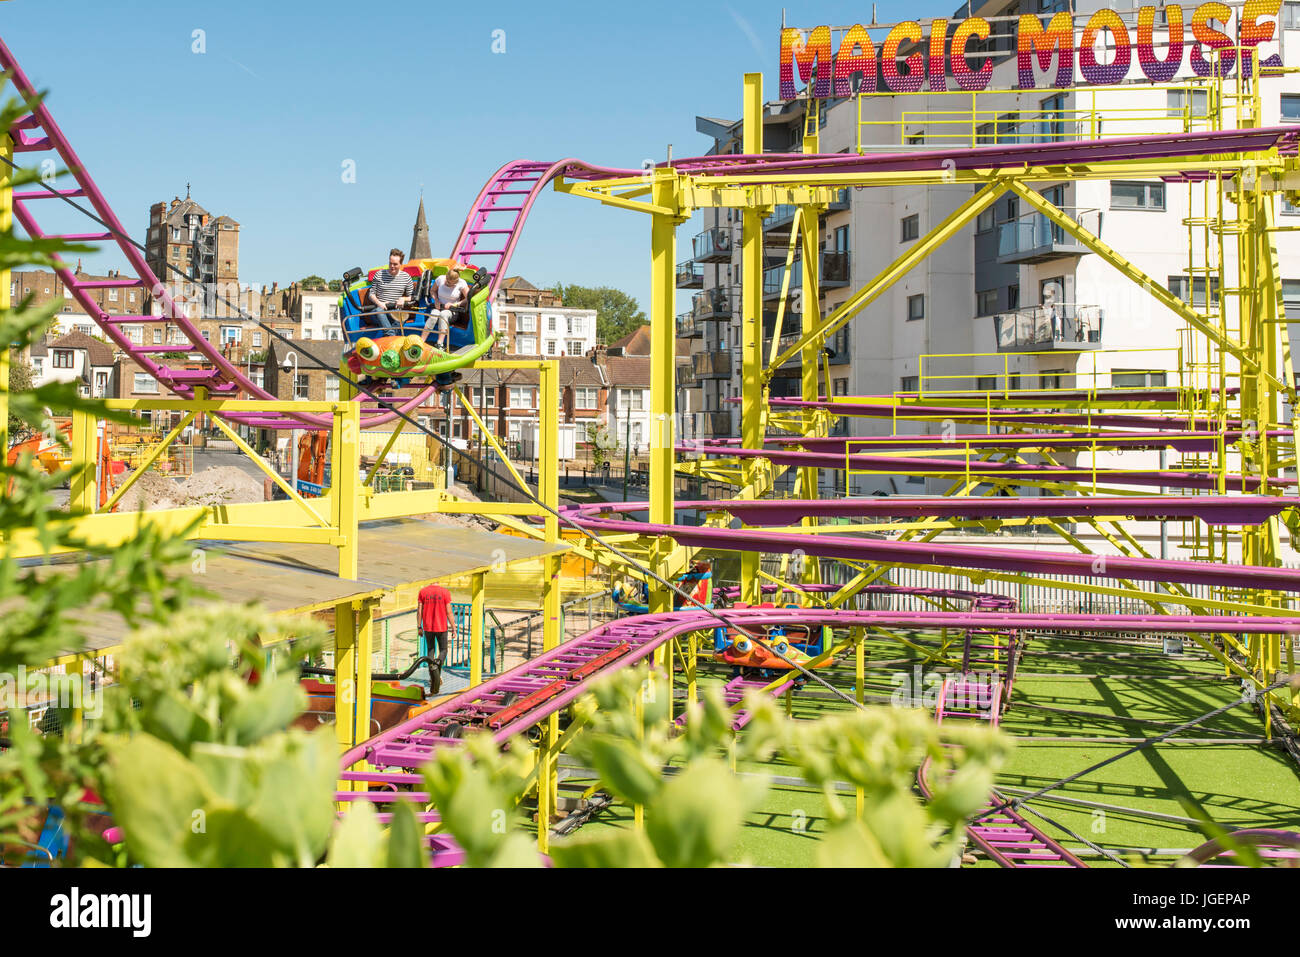 Le persone che si godono il magic mouse ride presso il recentemente riaperto, dreamland pleasure park, margate, Kent. Foto Stock